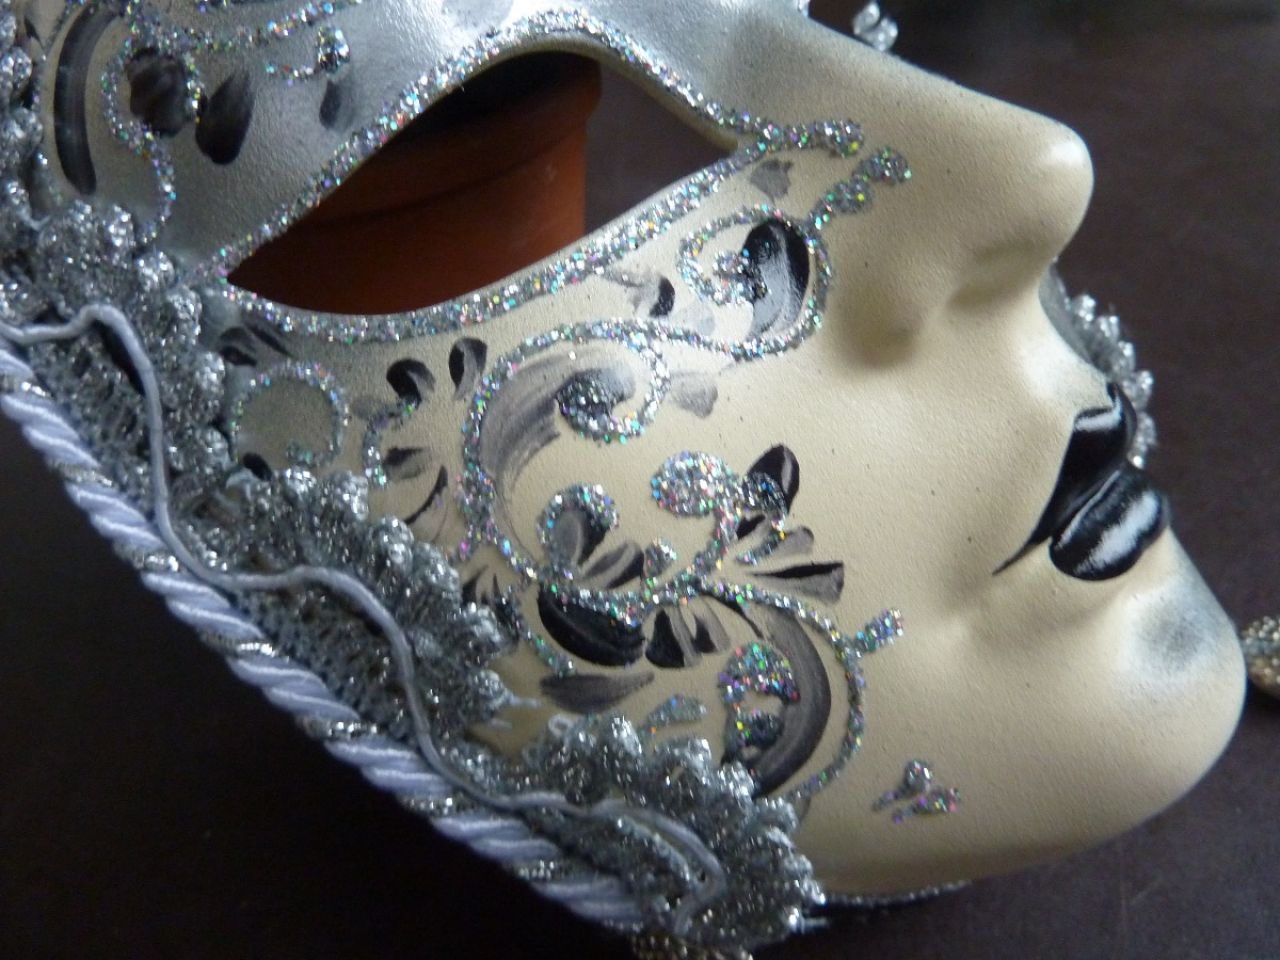 masque visage décoré à la main, couleur blanc et gris, joli bijoux sur le front, gallons et pampilles gris